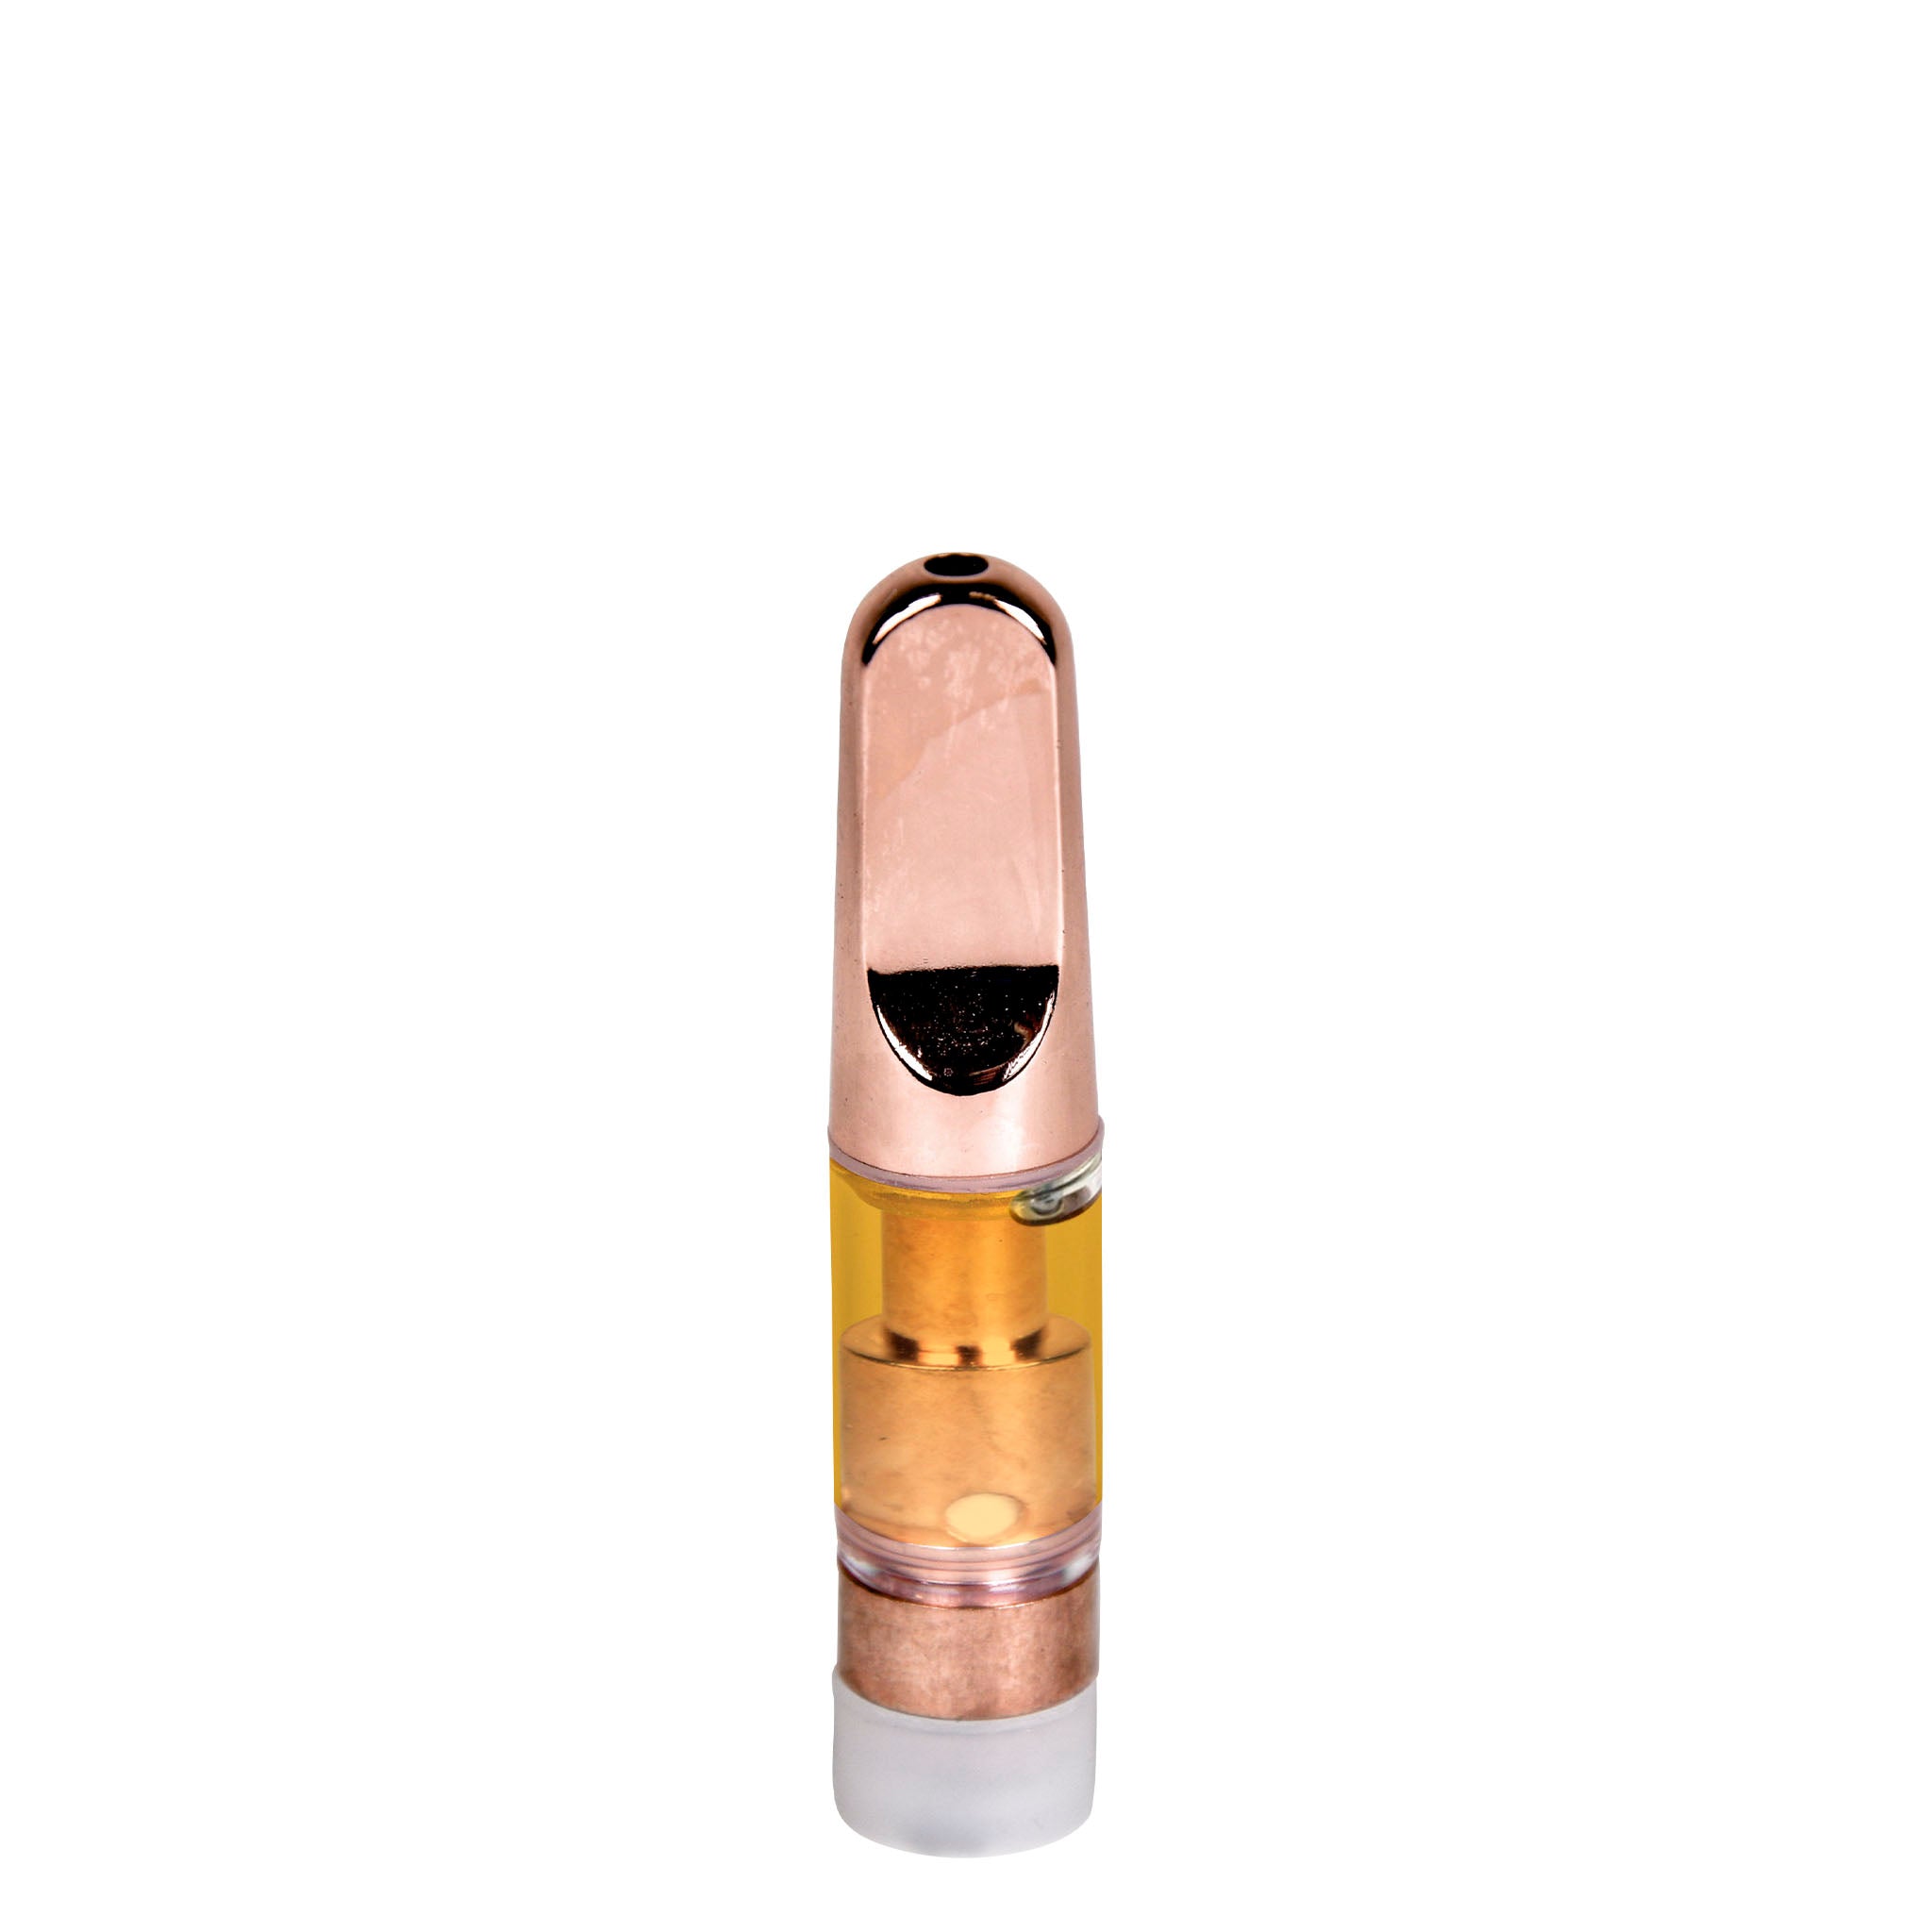 Empty 0.5mL 510 Rose Gold Tip Vape Cartridge-Vape Cartridges-Vape Pens Wholesale